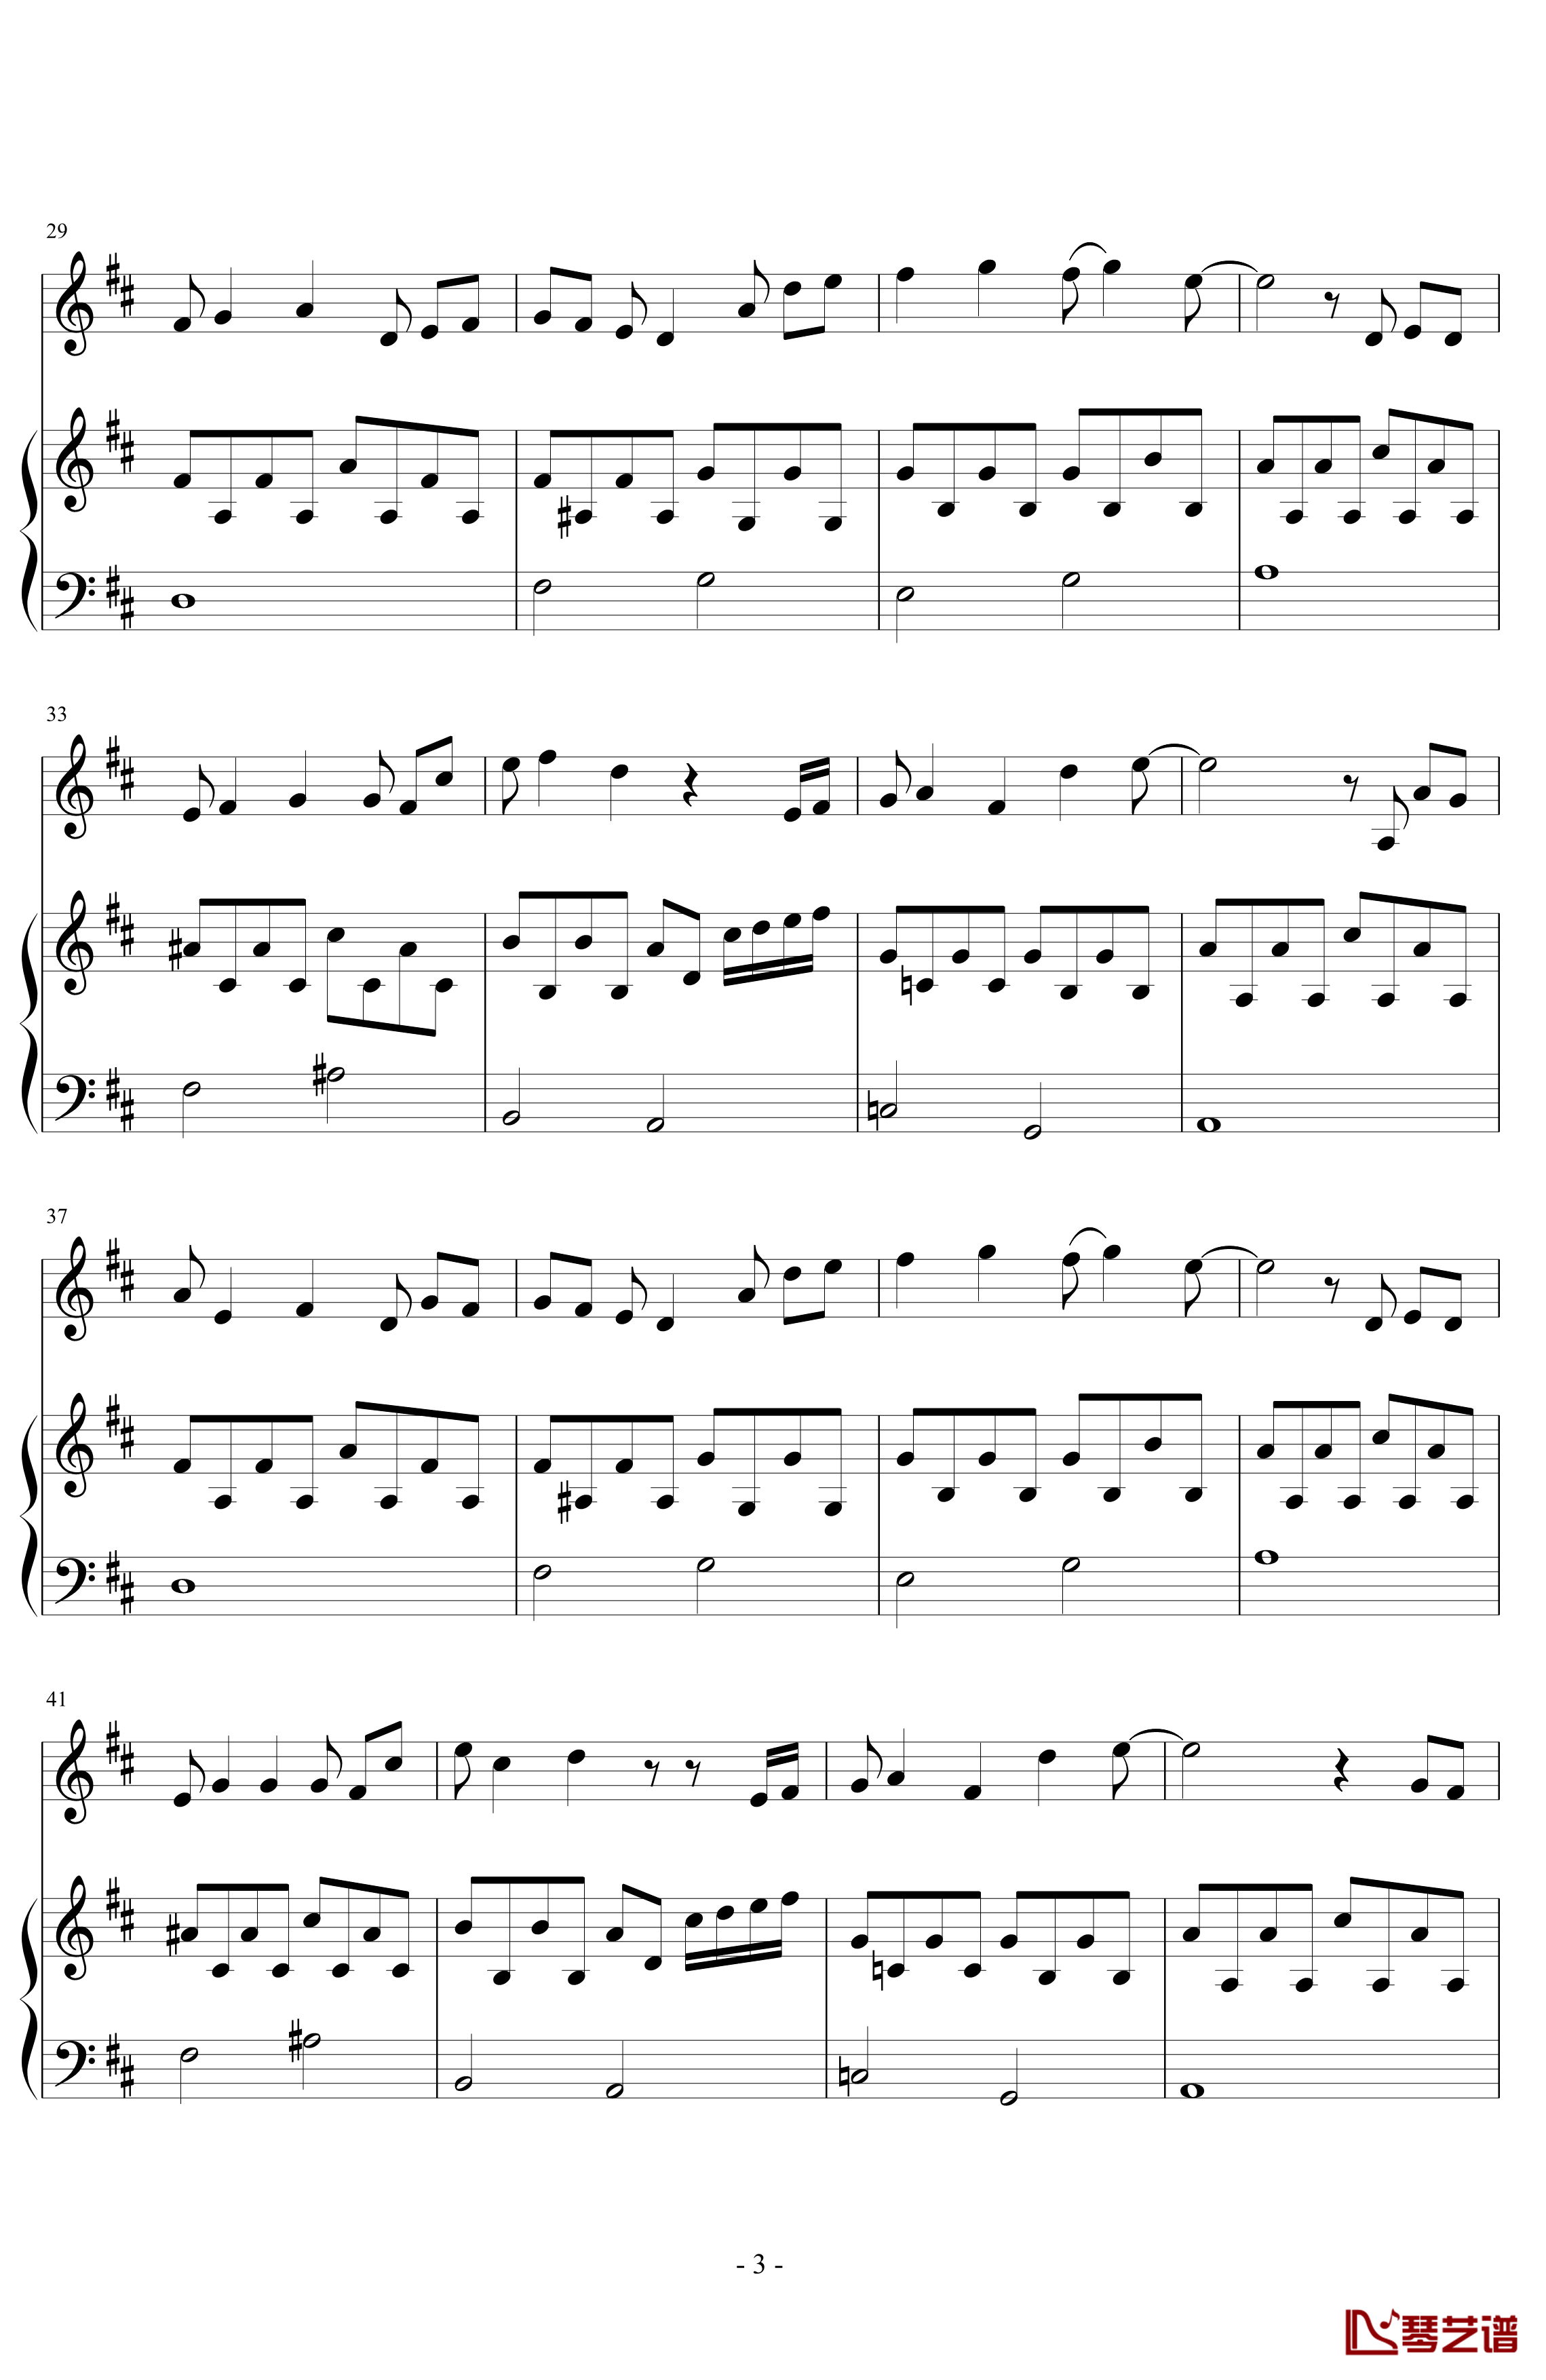 三年级二班钢琴谱-潇洒星空3